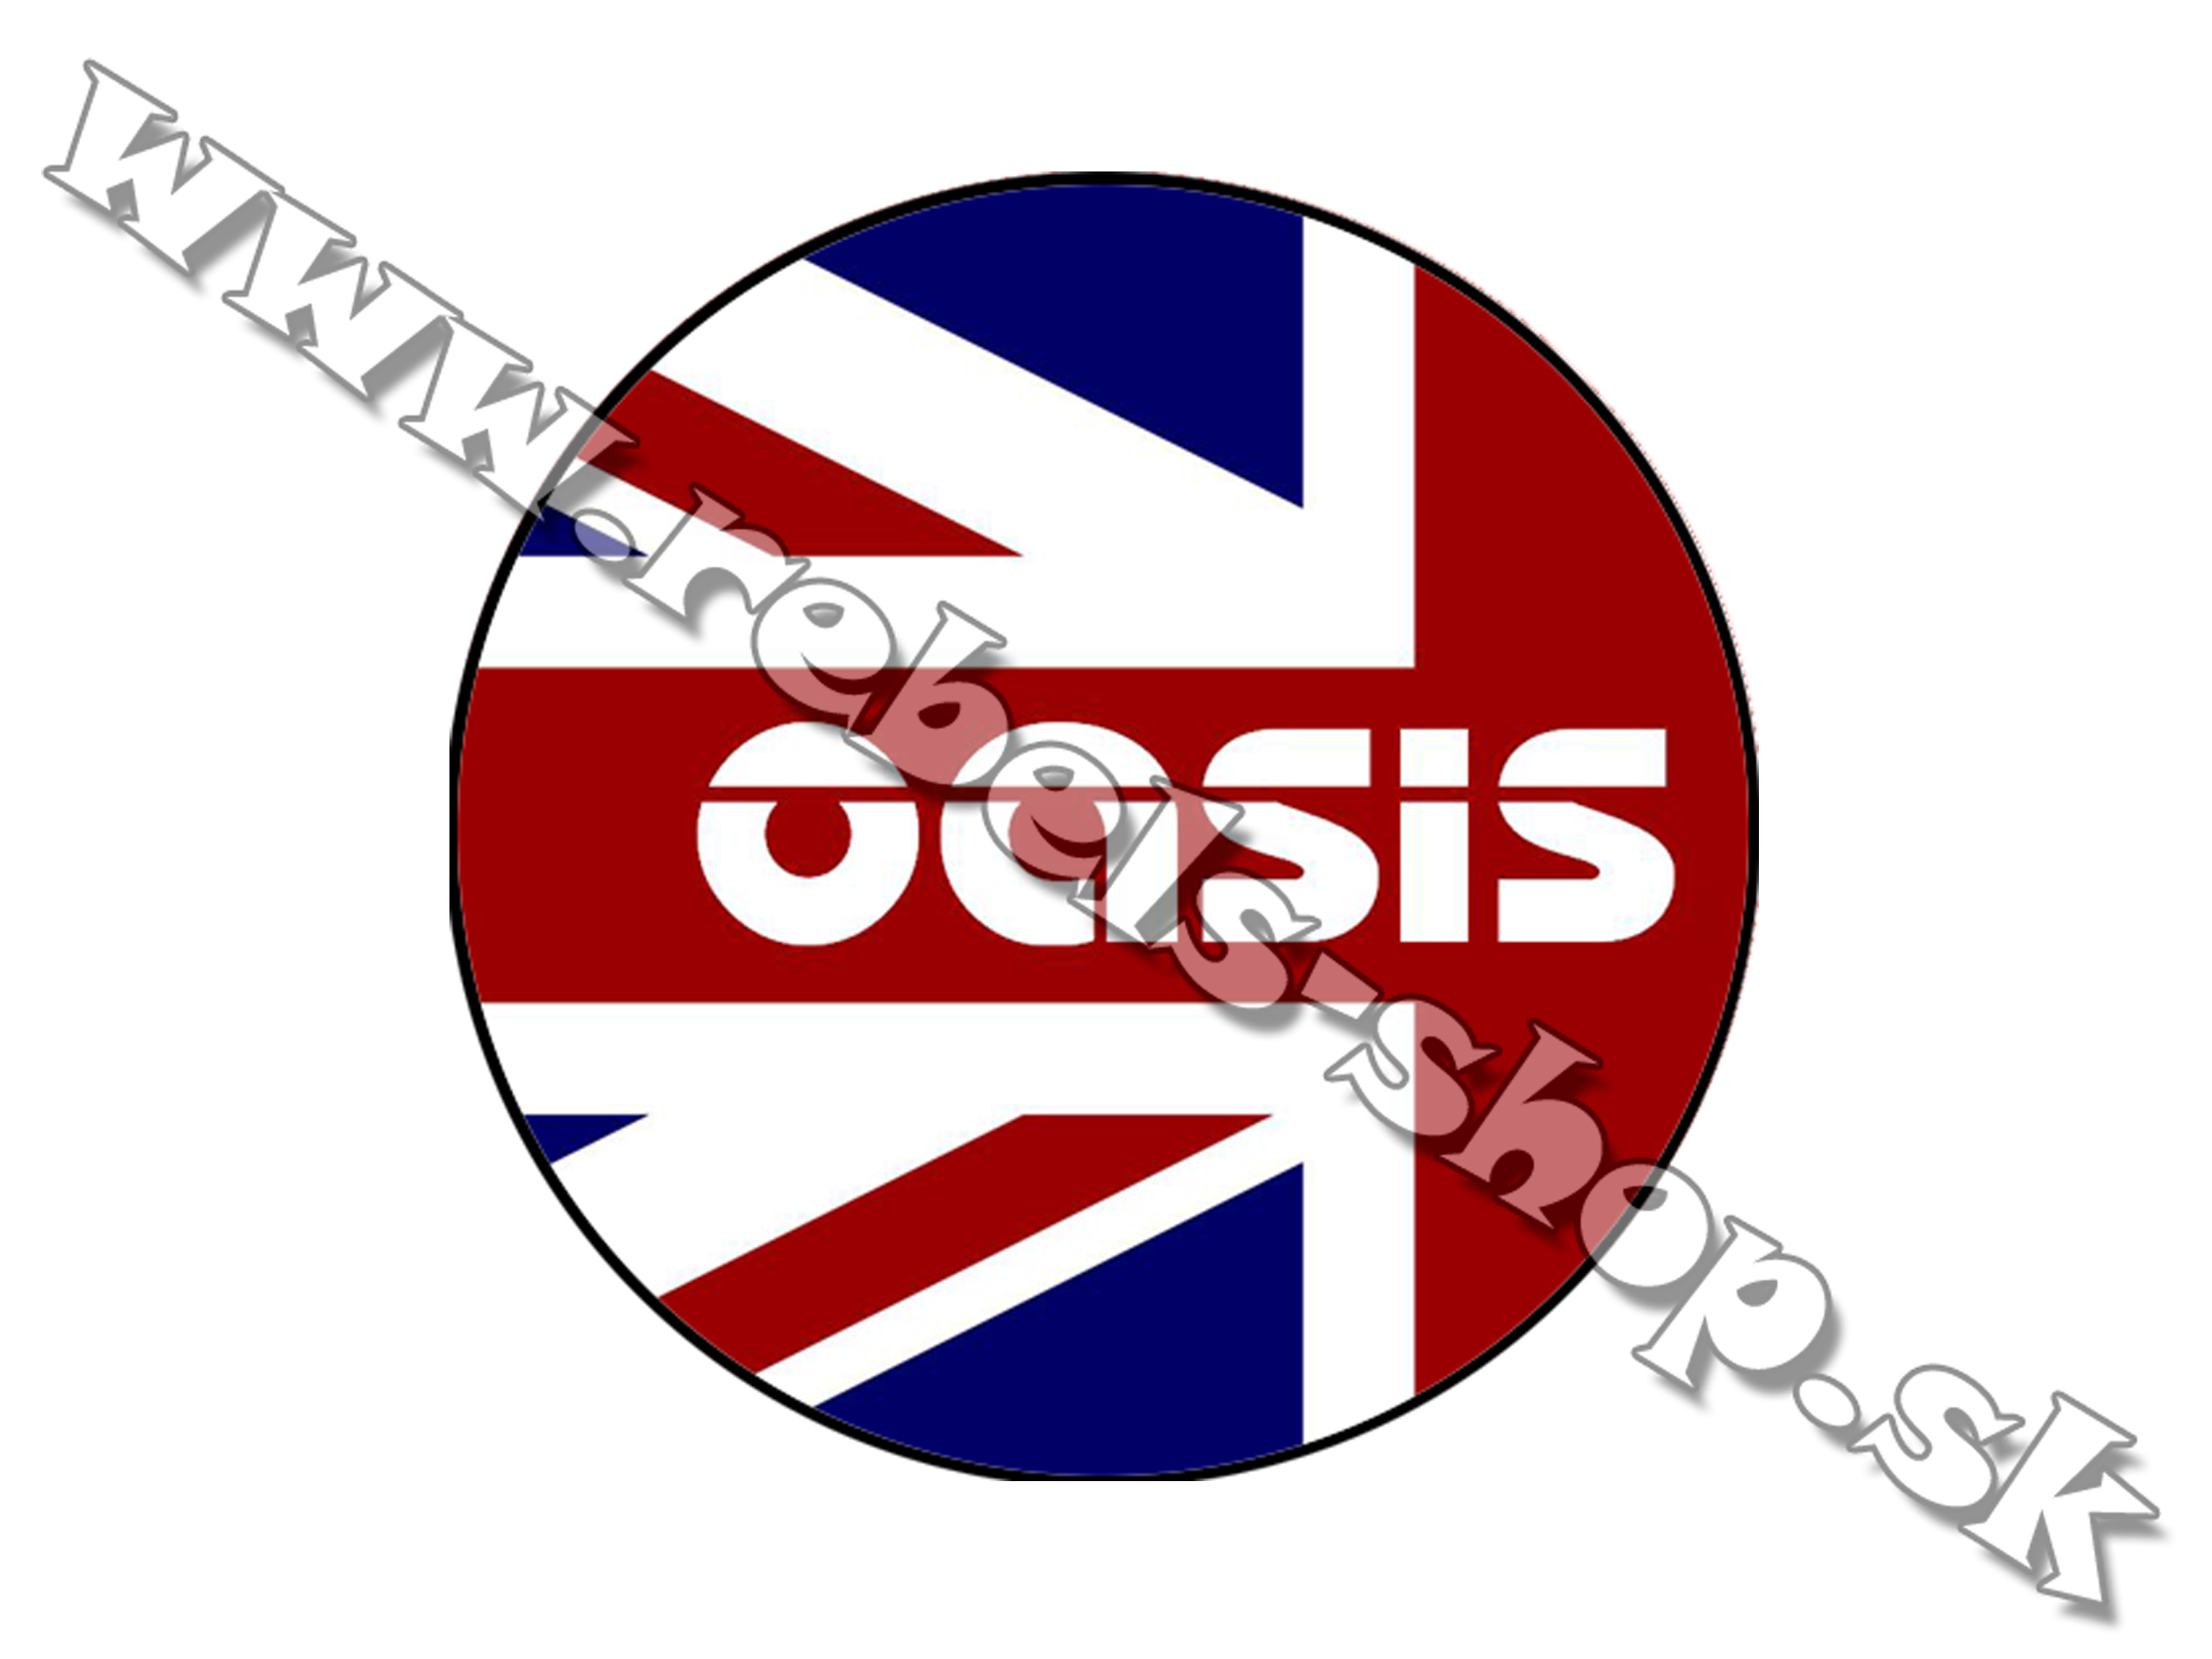 Odznak "Oasis"